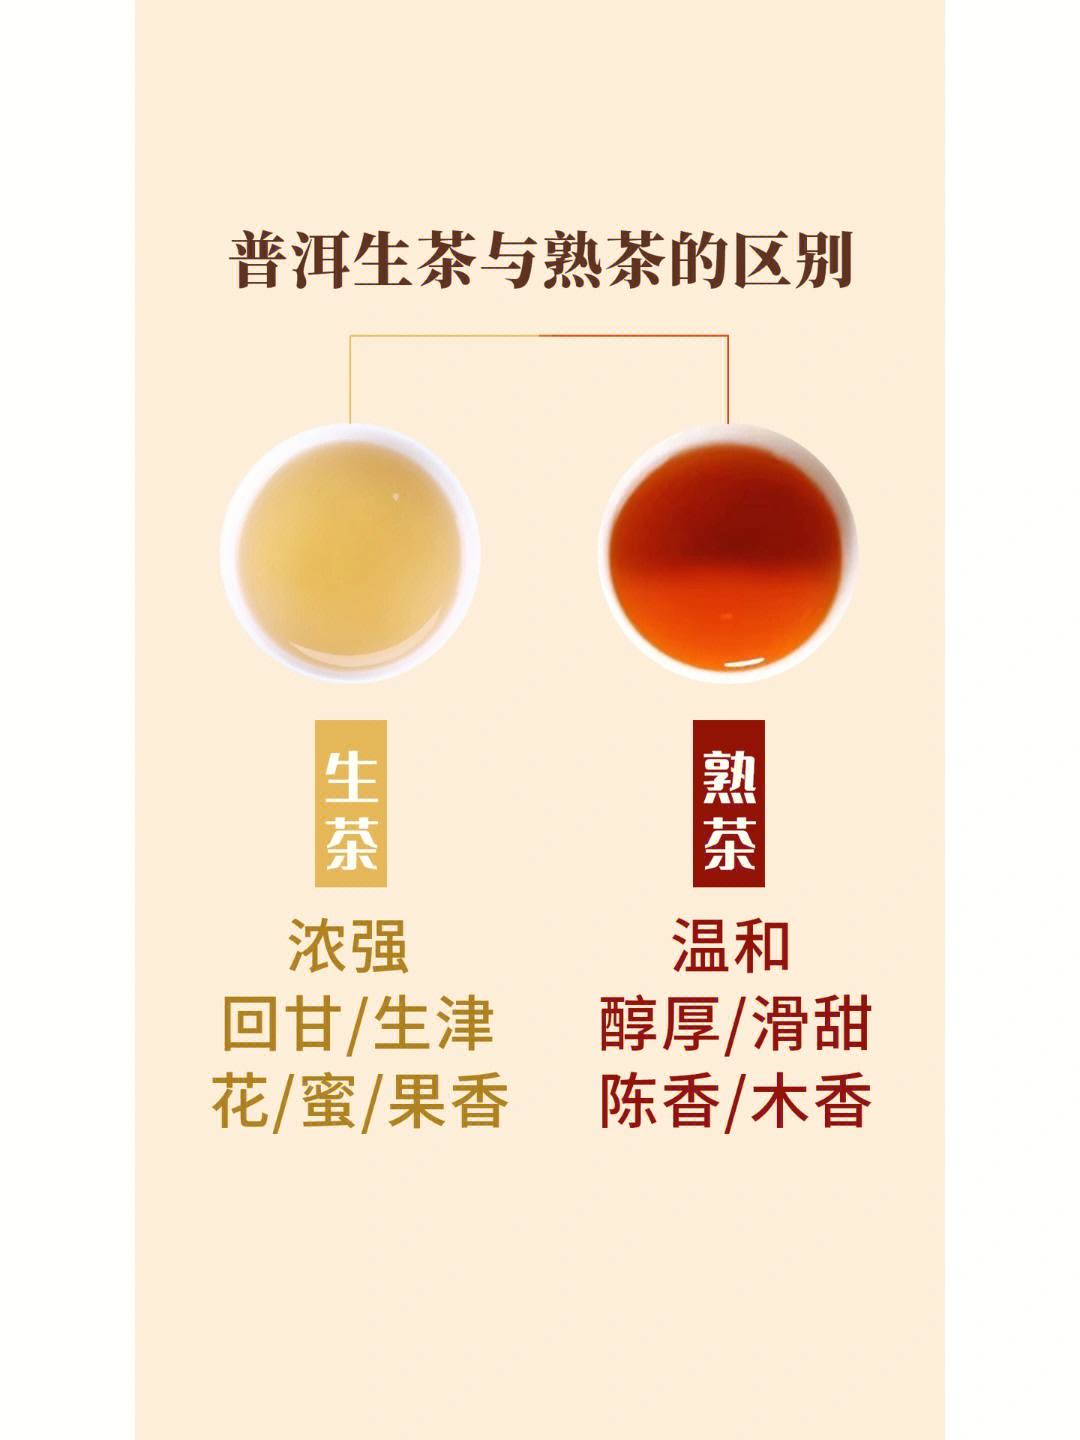 普洱生茶与普洱熟茶的区别有哪些